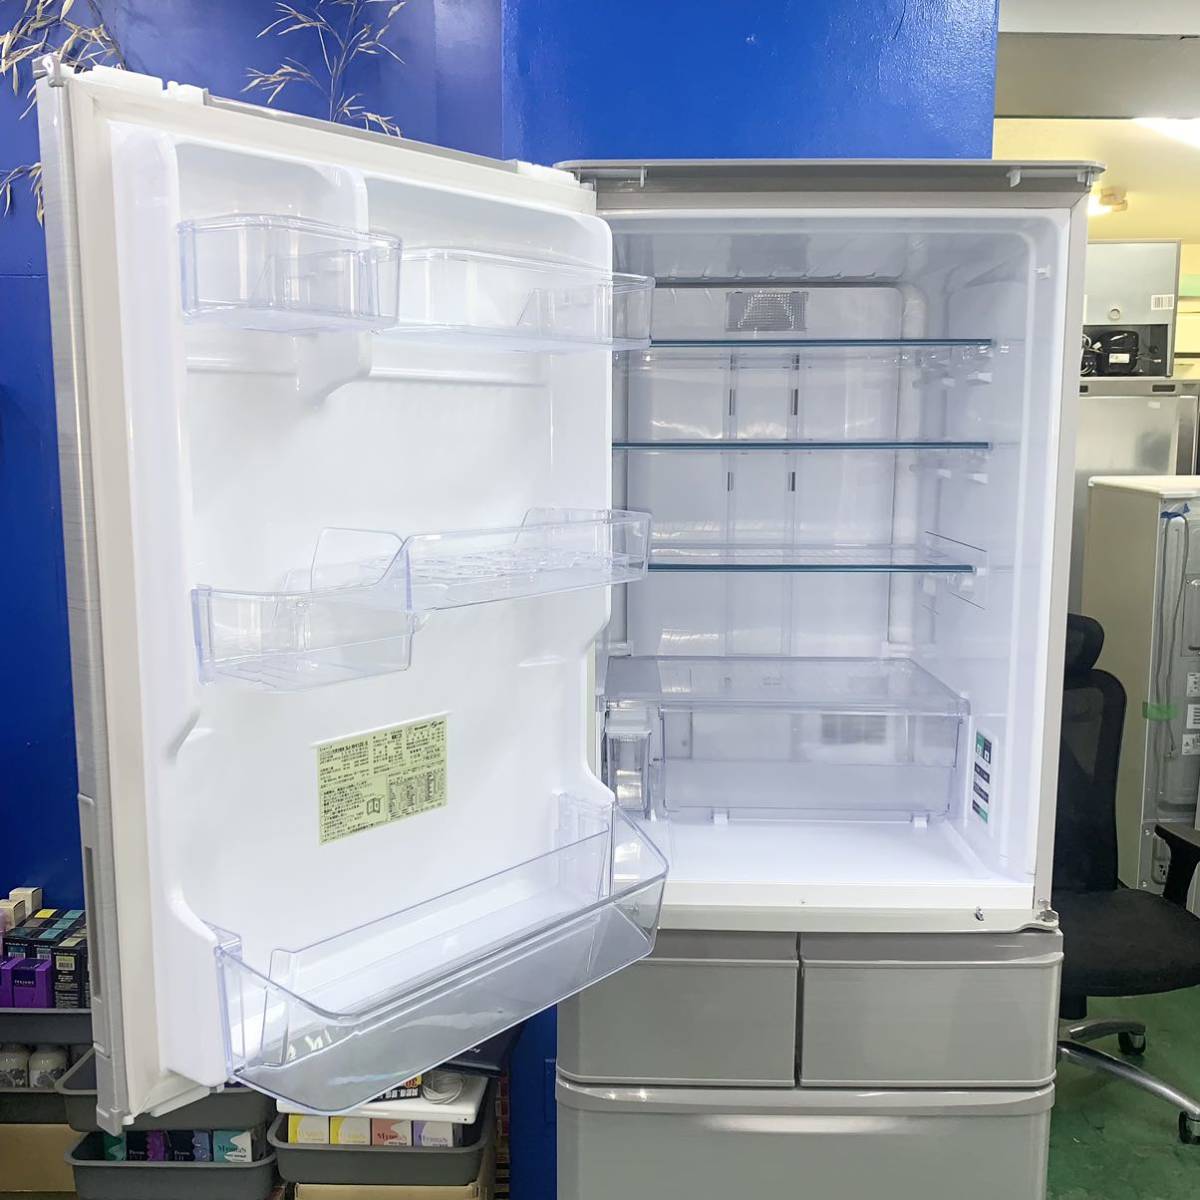 ◇SHARP◇冷凍冷蔵庫 2019年412L自動製氷左右開き 大阪市近郊配送無料